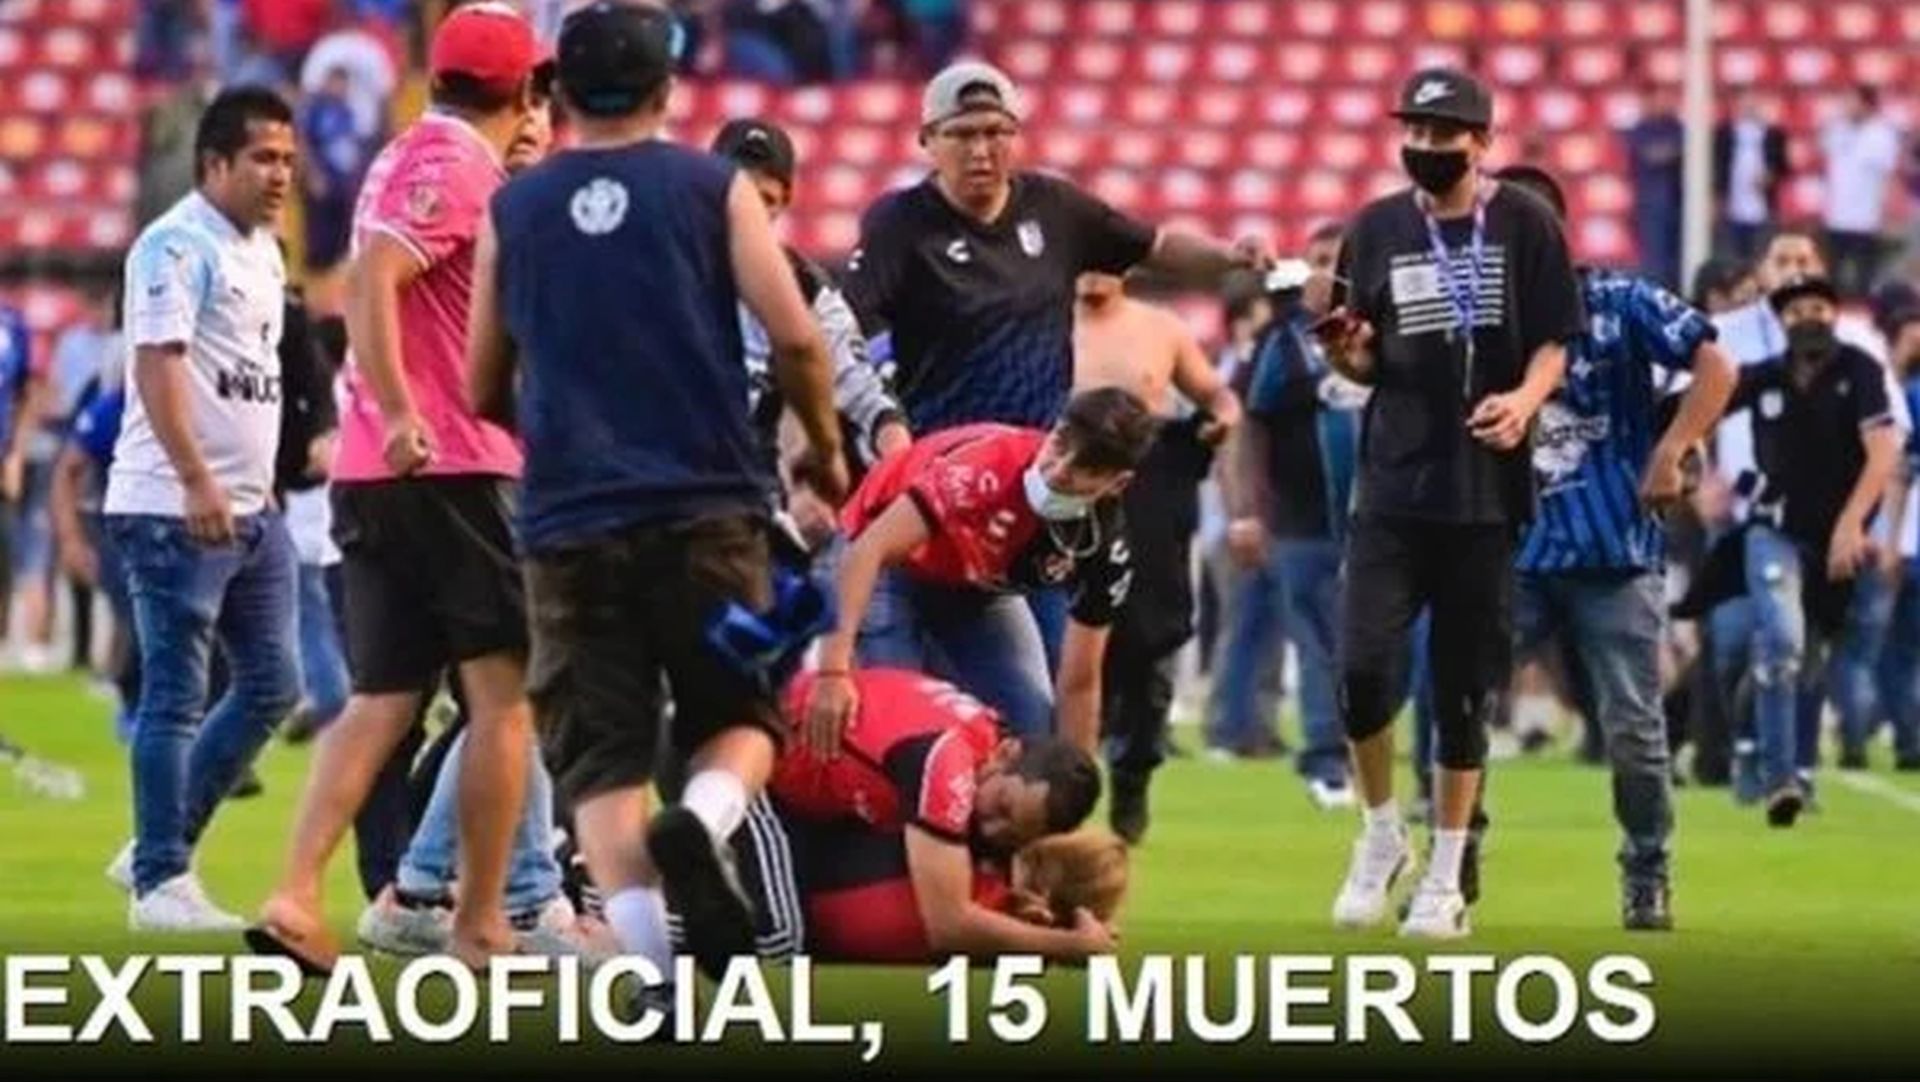 Torcedores morrem após pancadaria em jogo de futebol no México